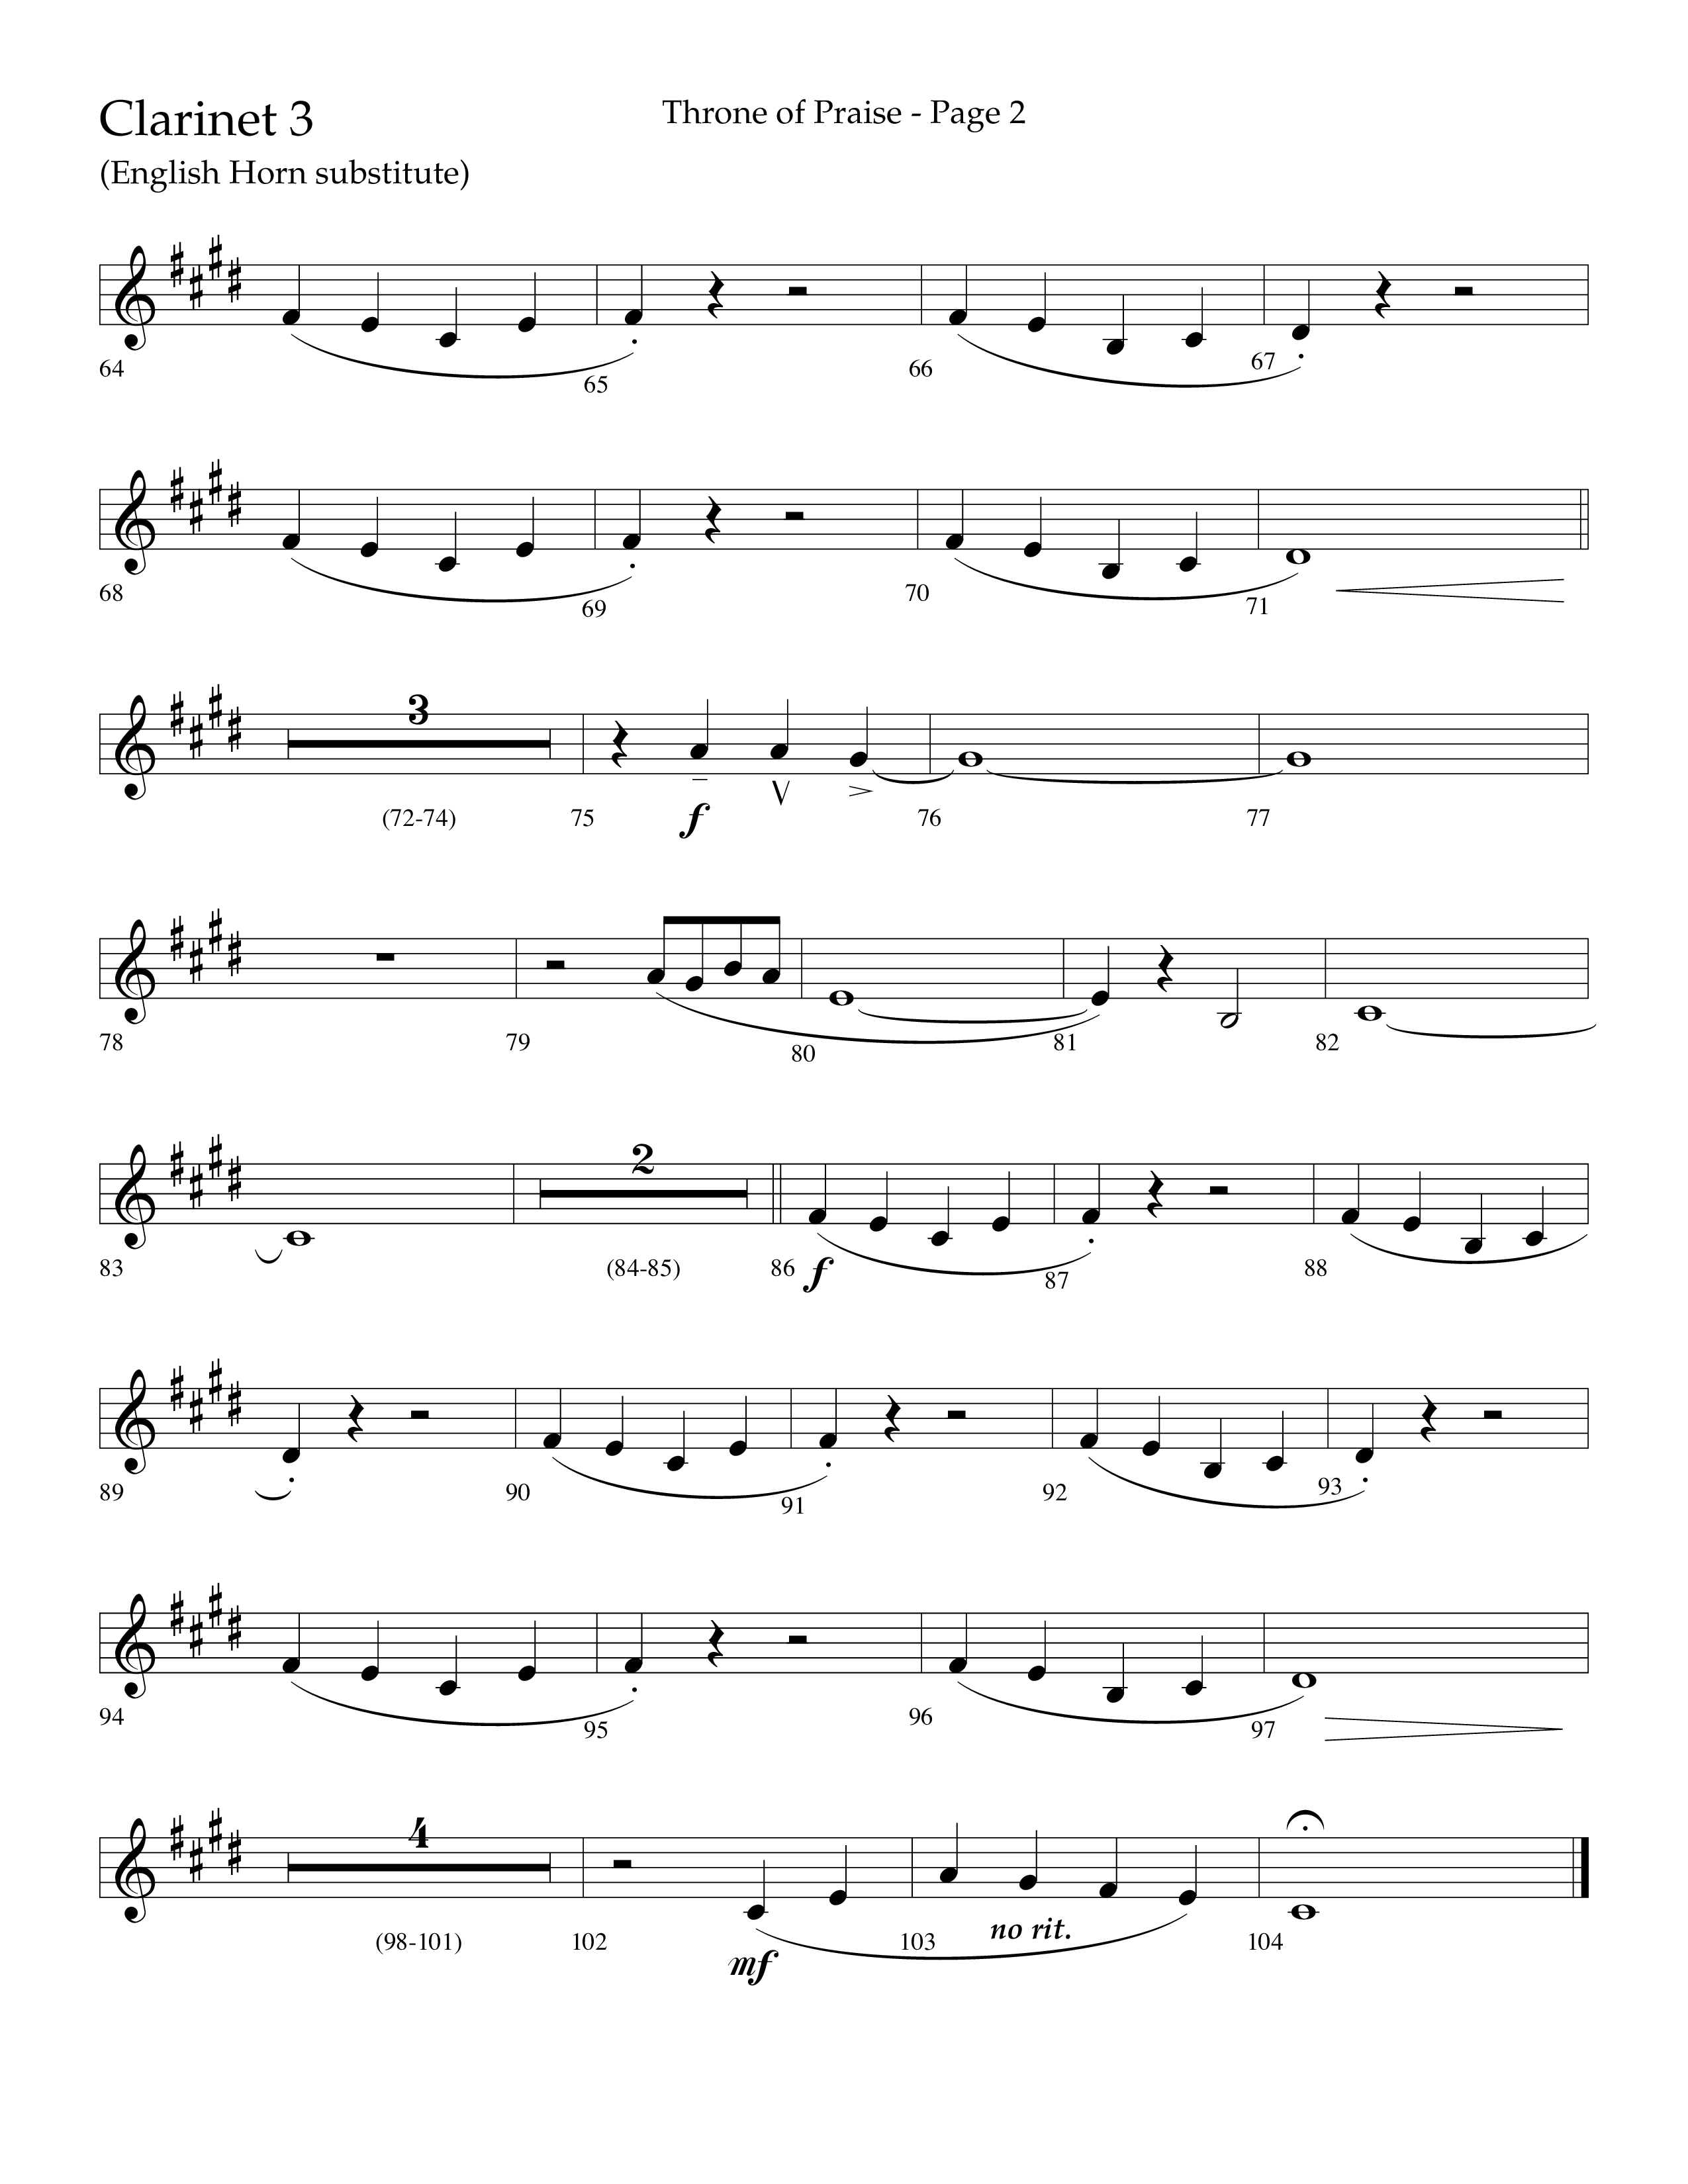 Throne Of Praise (Choral Anthem SATB) Clarinet 3 (Lifeway Choral / Arr. J. Daniel Smith)